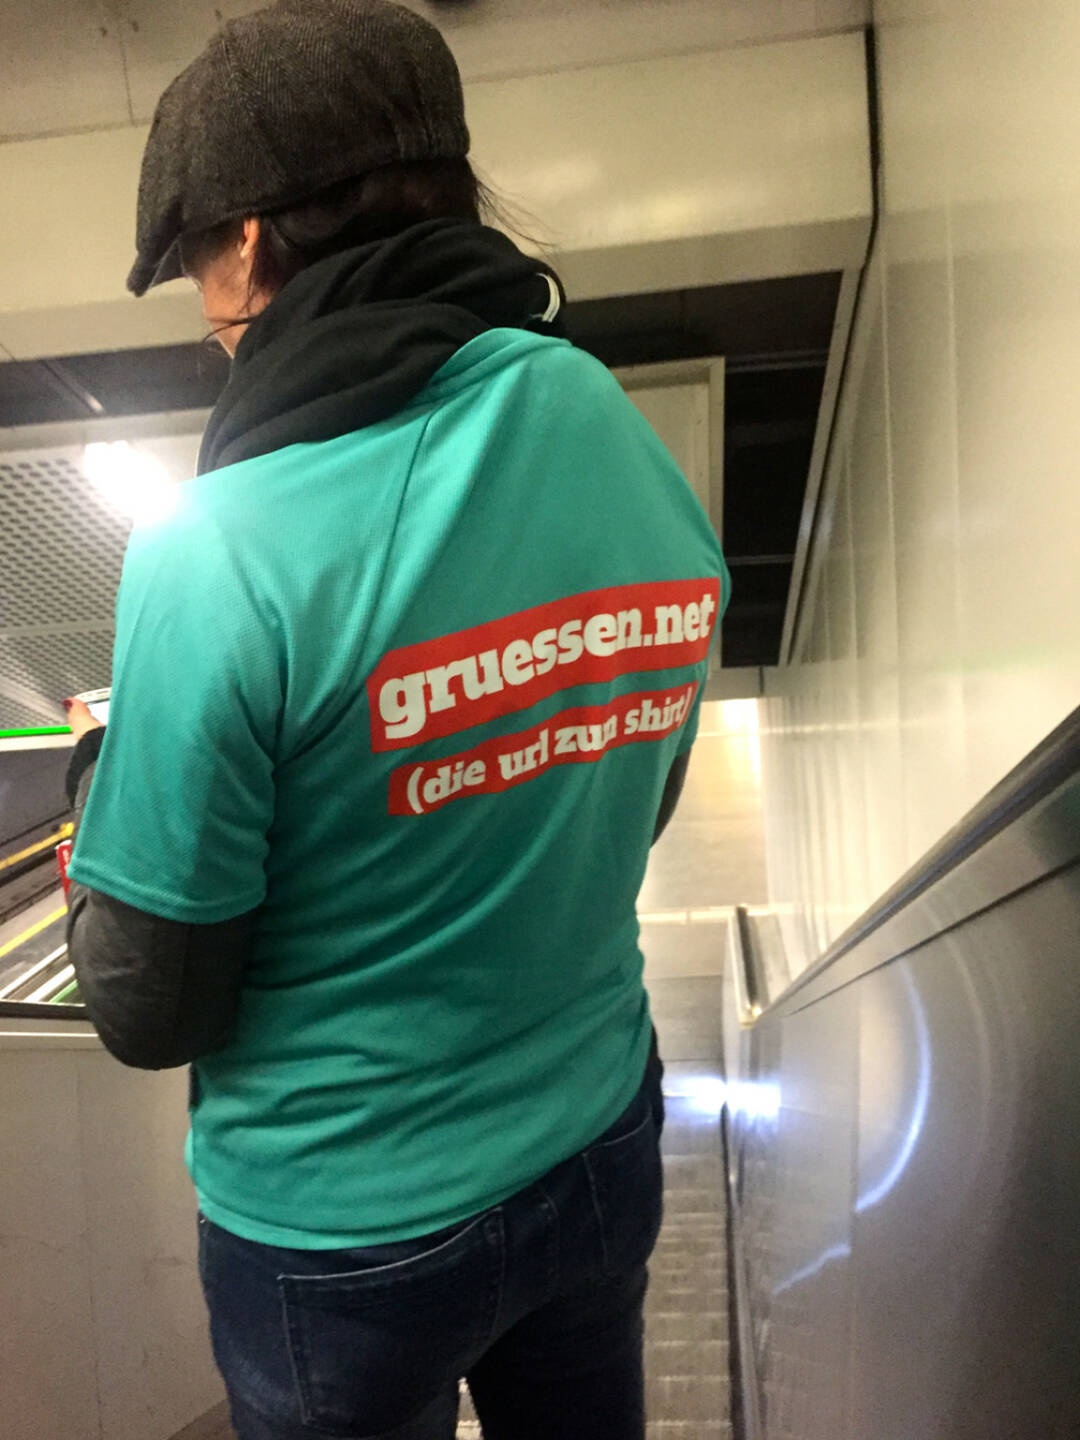 Gruessen.net Zufallstreffer in der U-Bahn